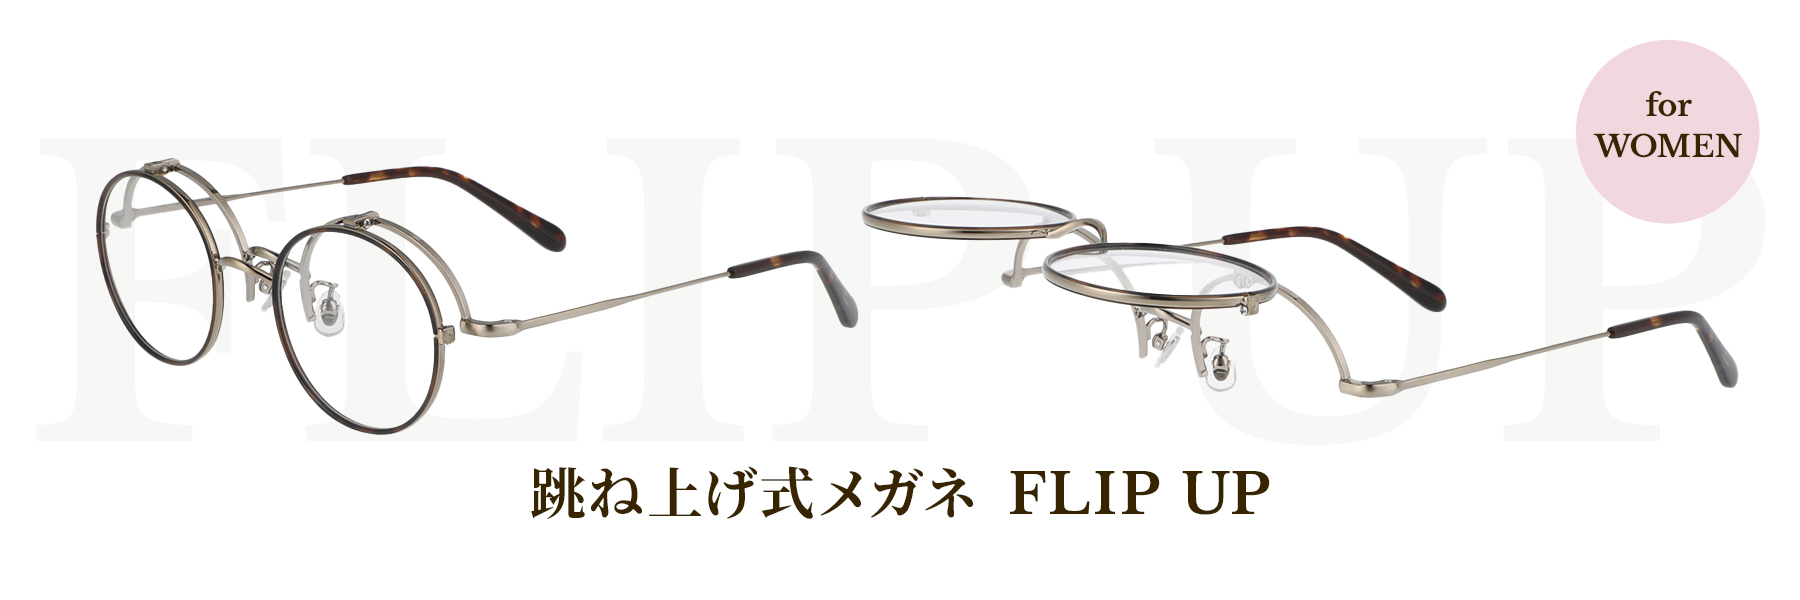 かけはずし不要で手元が見やすい、跳ね上げ式メガネ「FLIP UP」に女性でもかけやすいクラシックモデルが登場。